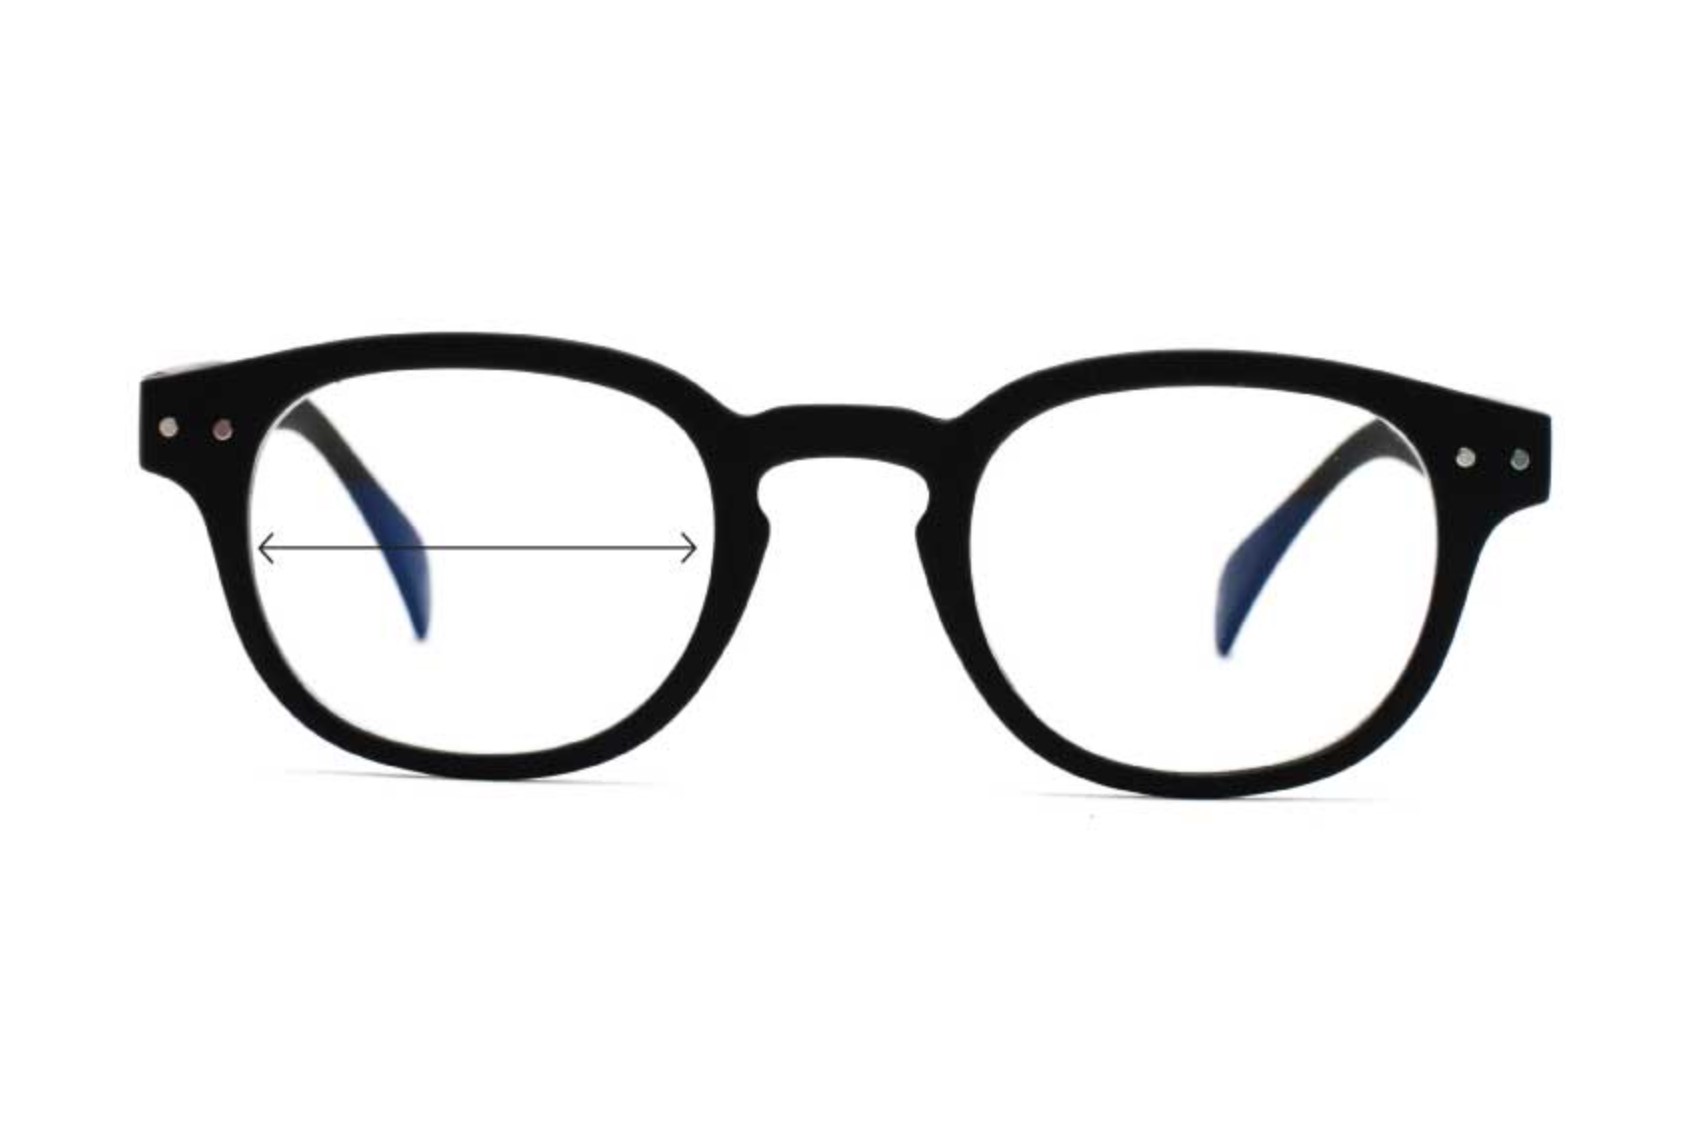 – Anton BlueVision w Blue Light Reading Glasses, Women's